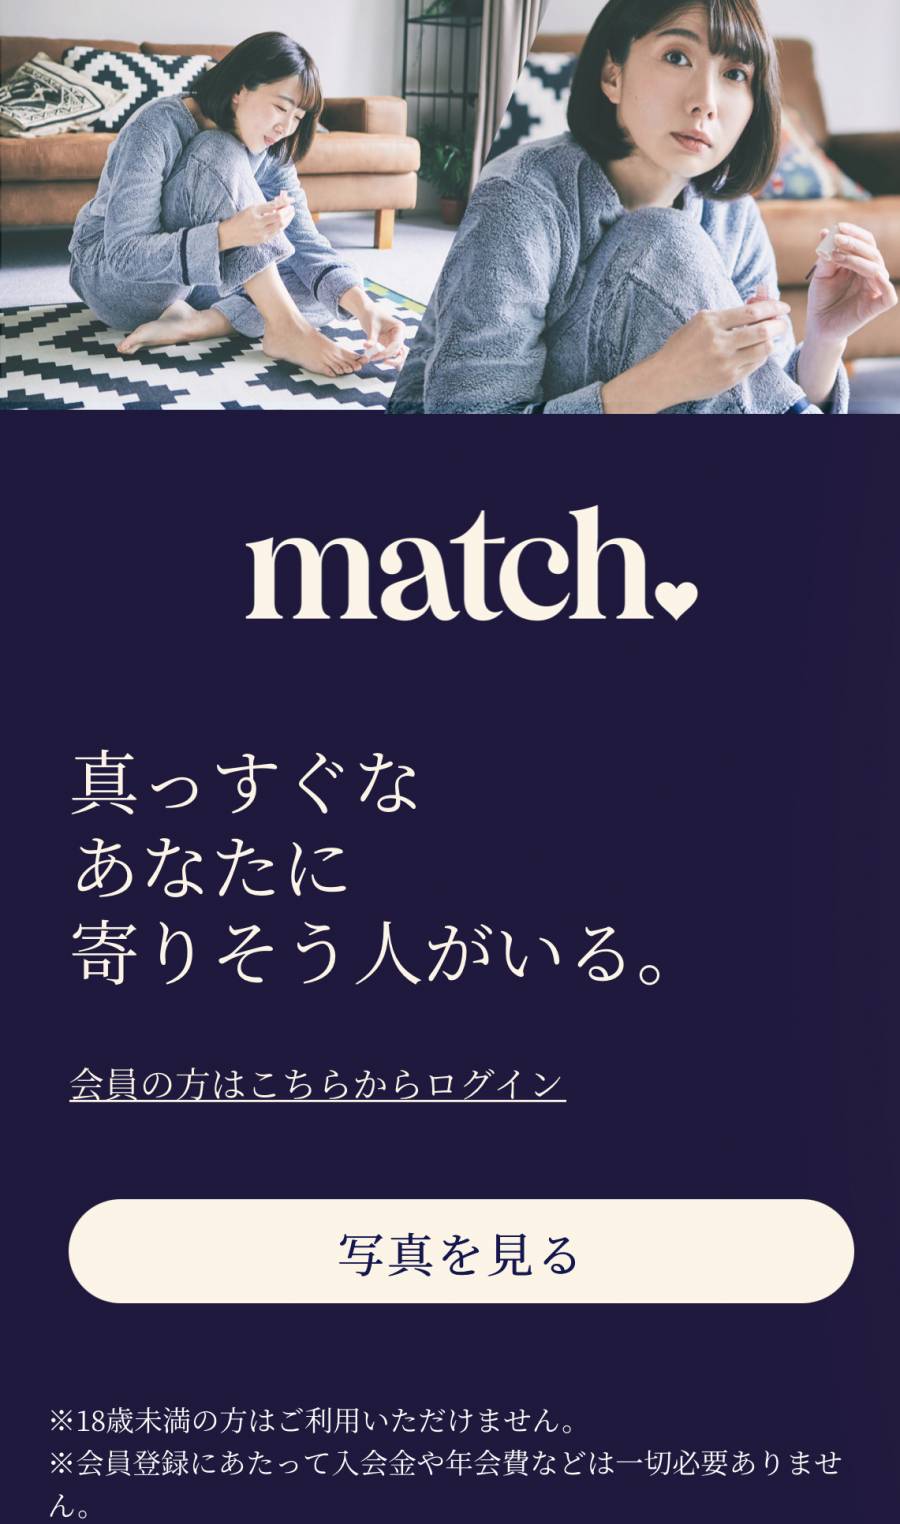 matchの画像